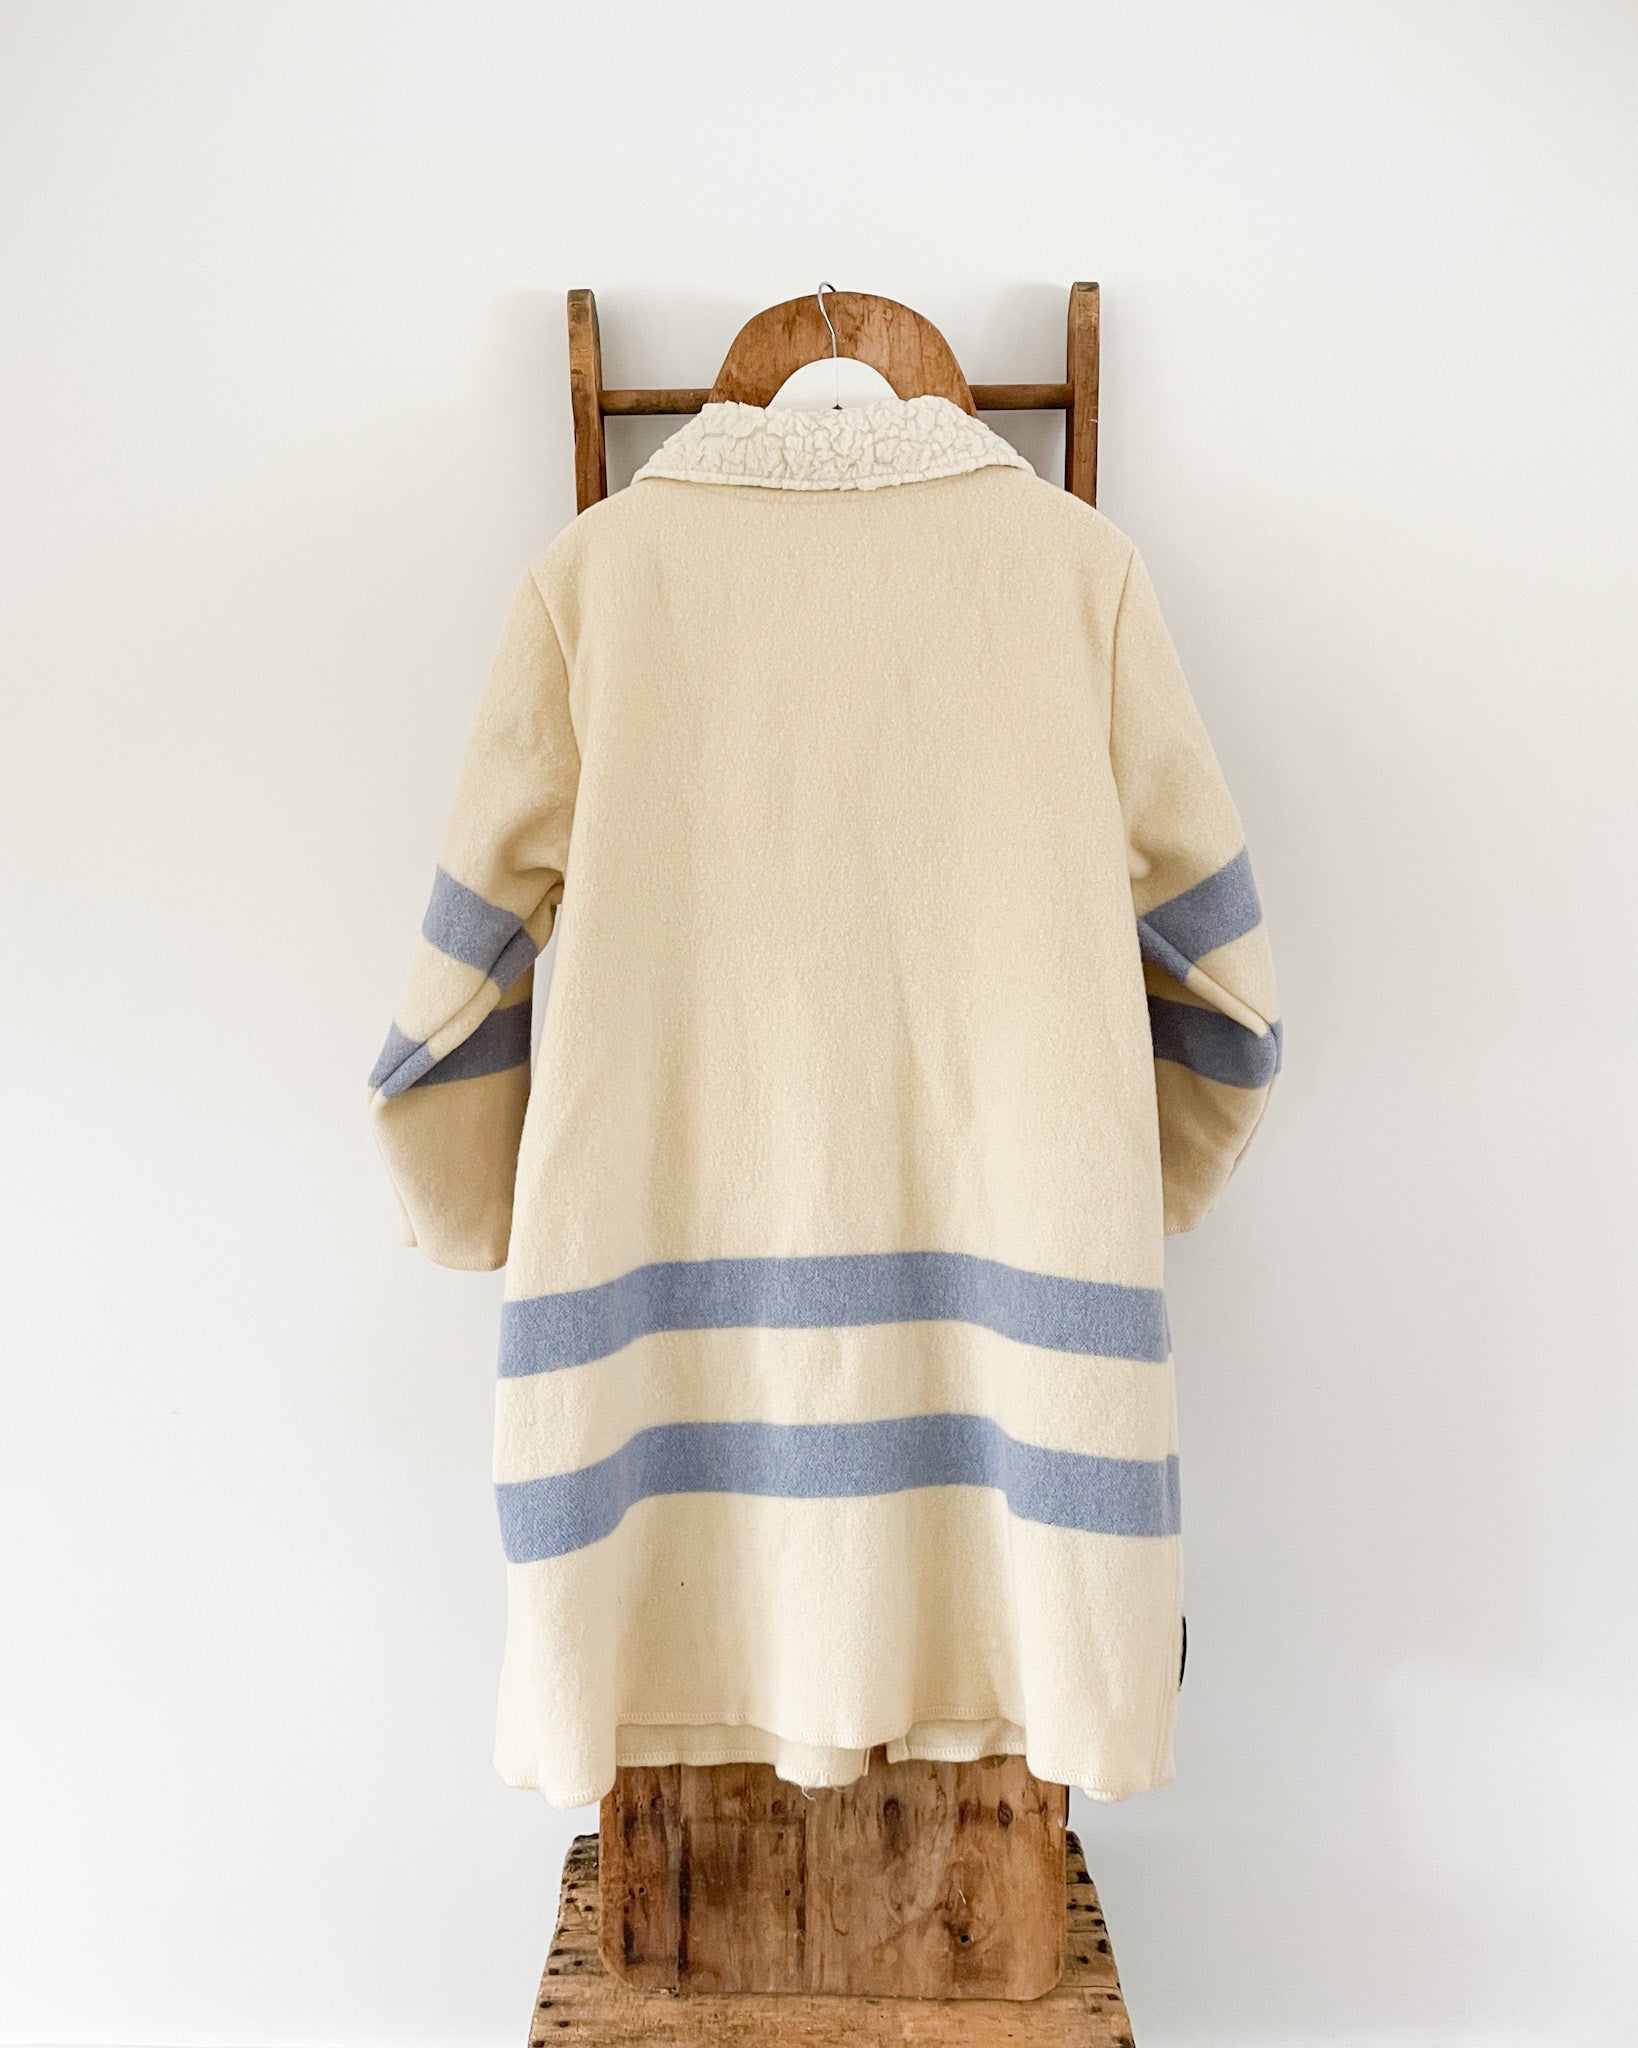 Vintage Wool Coat